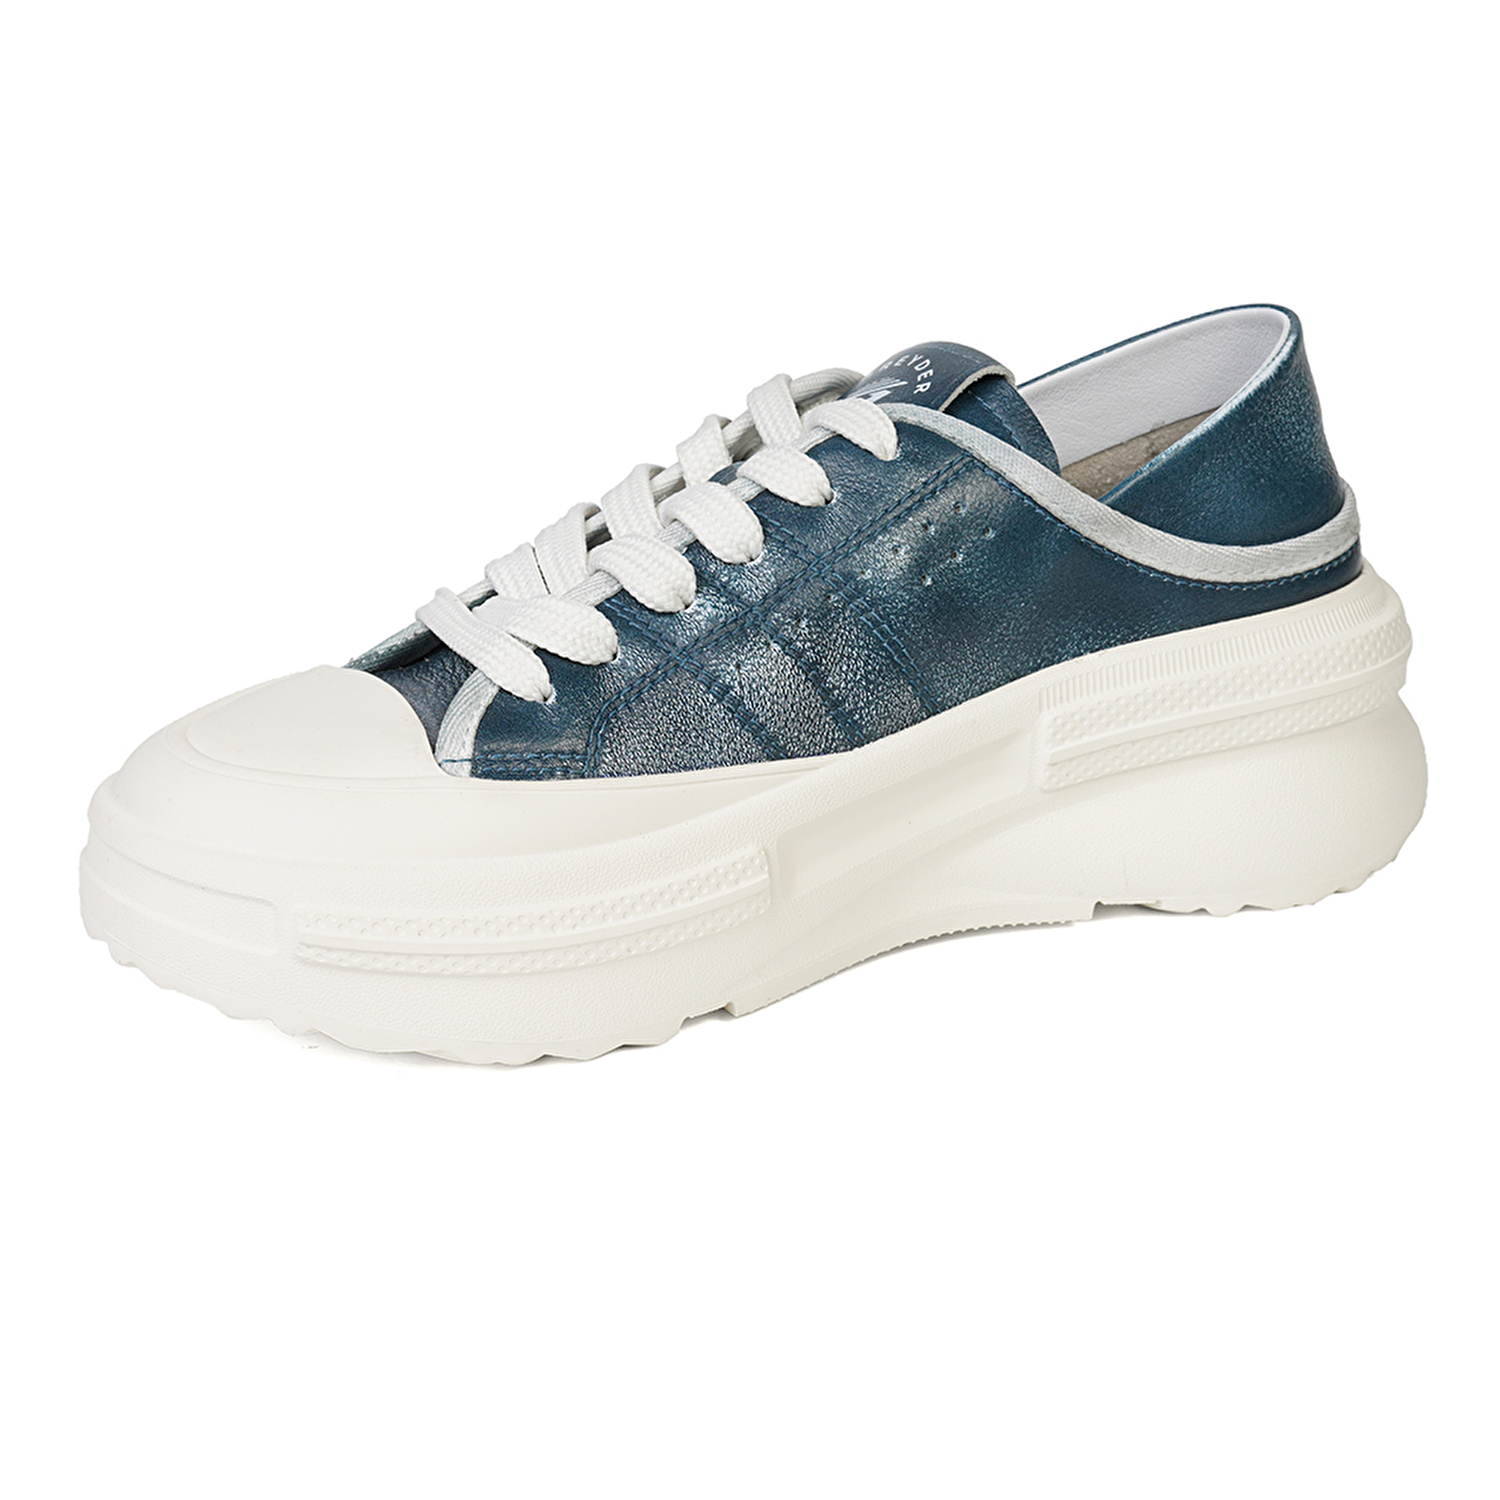 Kadın Mavi Hakiki Deri Sneaker Ayakkabı 4Y2SA33400-2